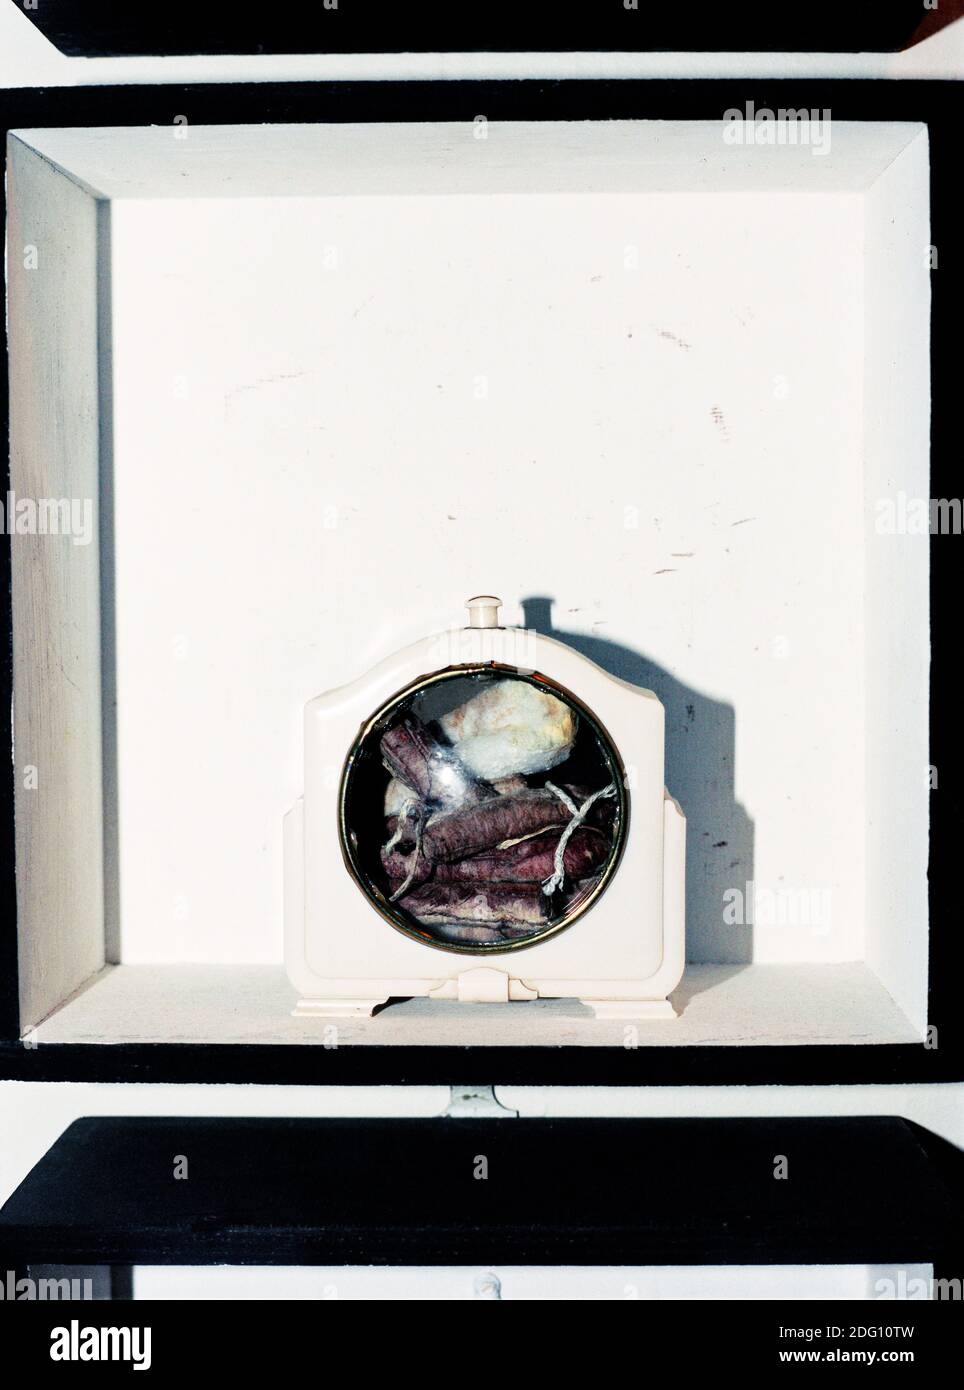 Artwork "IT’s That Time of the Month" (aus Tampax Romana), 1975, von Genesis Breyer P-Orridge. Fotografiert in ihrem Zuhause in Queens, New York. 23. Oktober 2002. Stockfoto